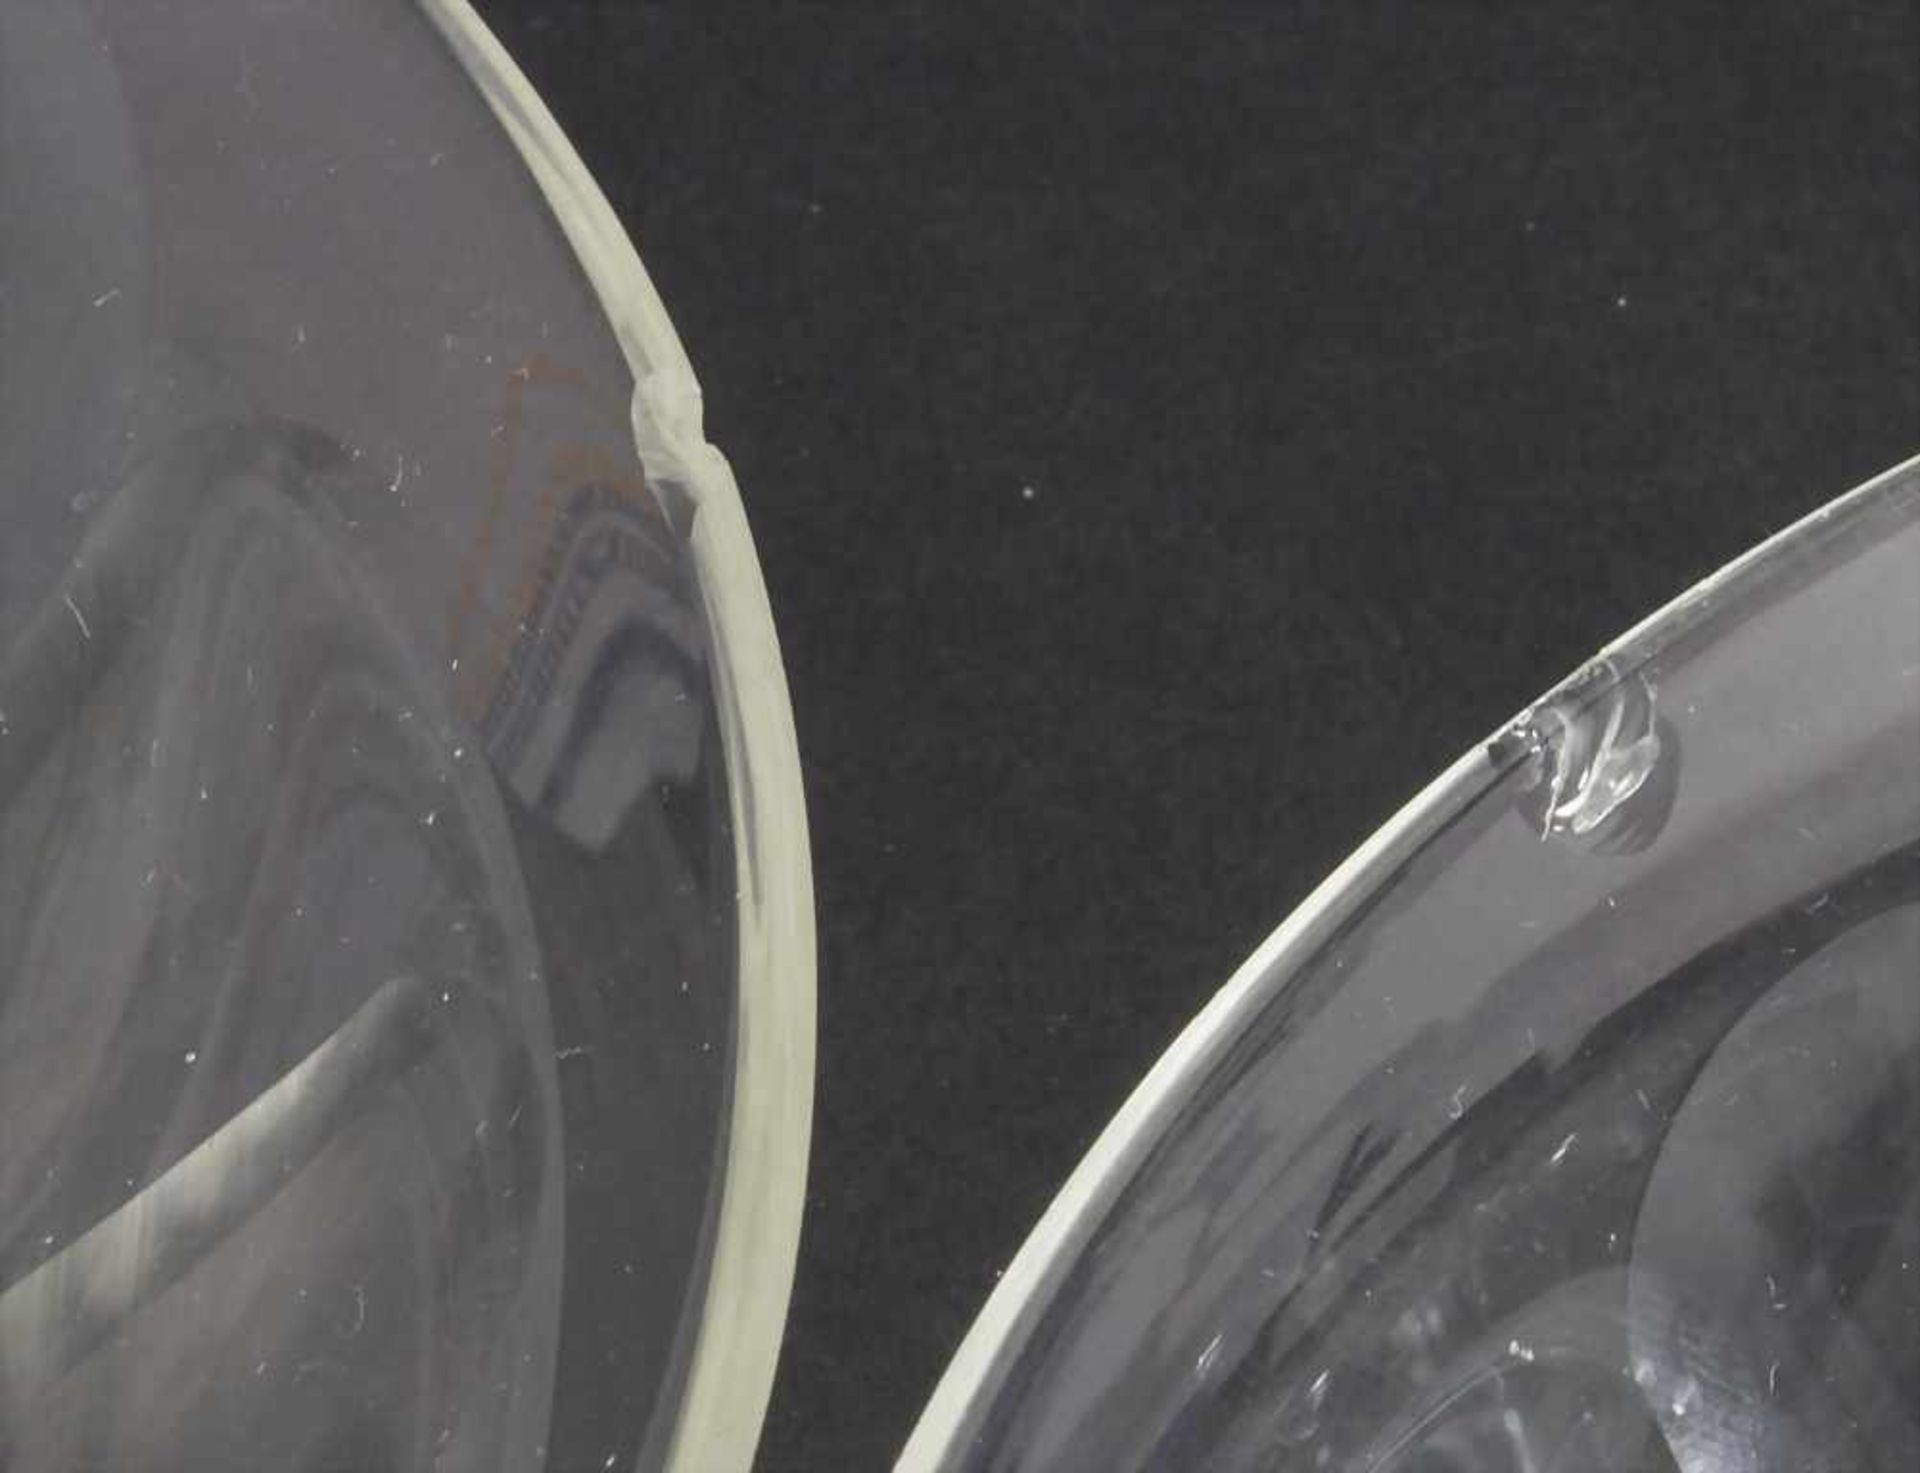 6 Glasschalen / 6 glass bowls, J. & L. Lobmeyr, Wien, um 1900 - Image 3 of 3